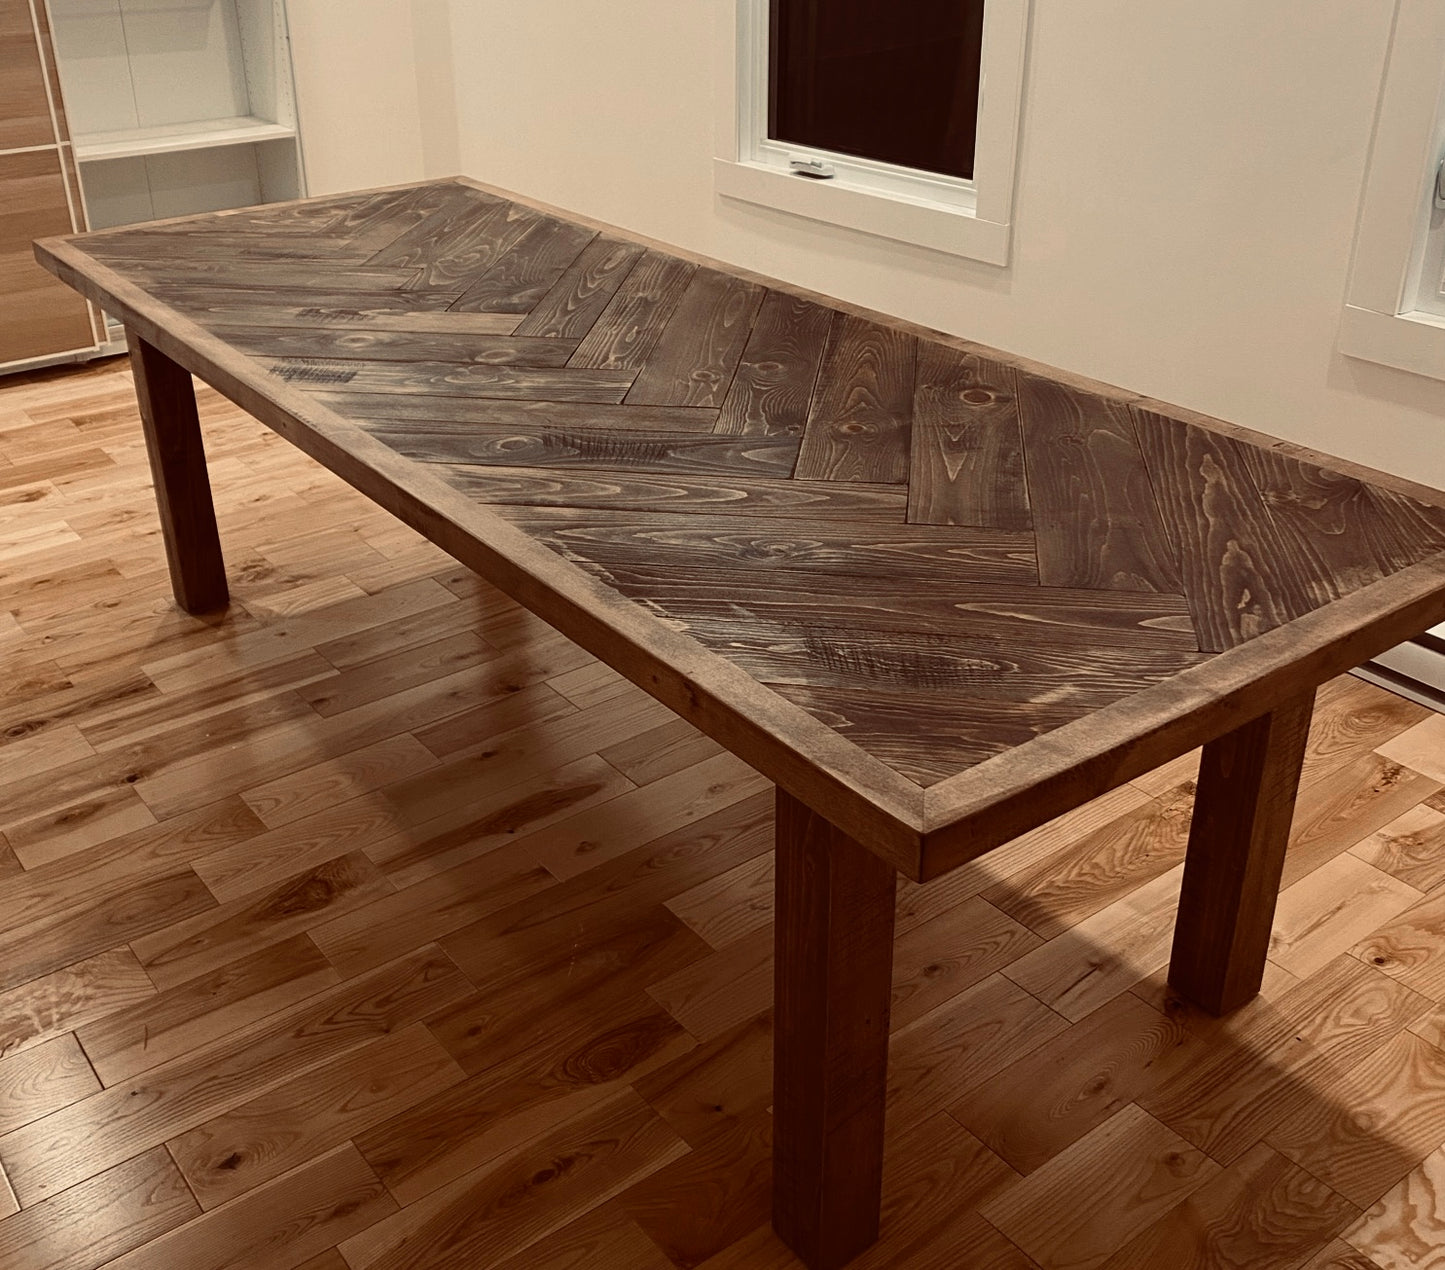 La Chevronnée - Table en style chevron avec différents types de bois